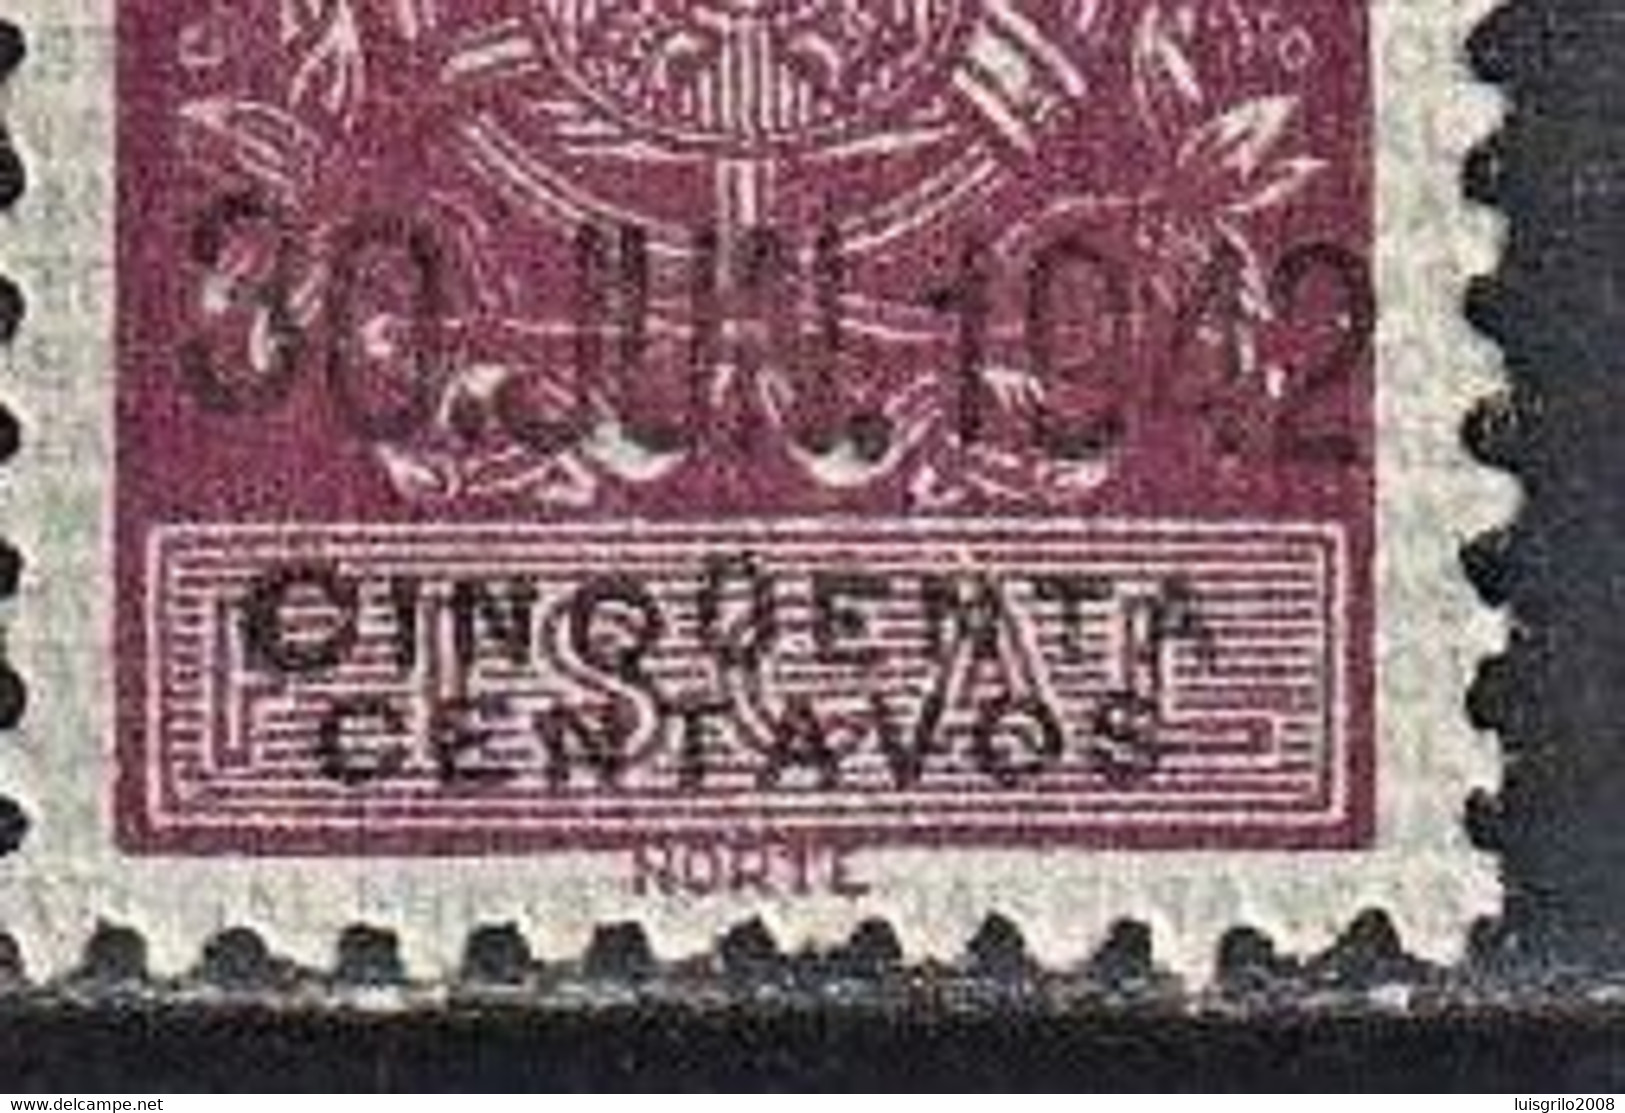 Fiscal/ Revenue, Portugal 1940 - Estampilha Fiscal -|- RARE STAMP - 0$50 Cinqüenta (Accents On The Letter U) - Oblitérés